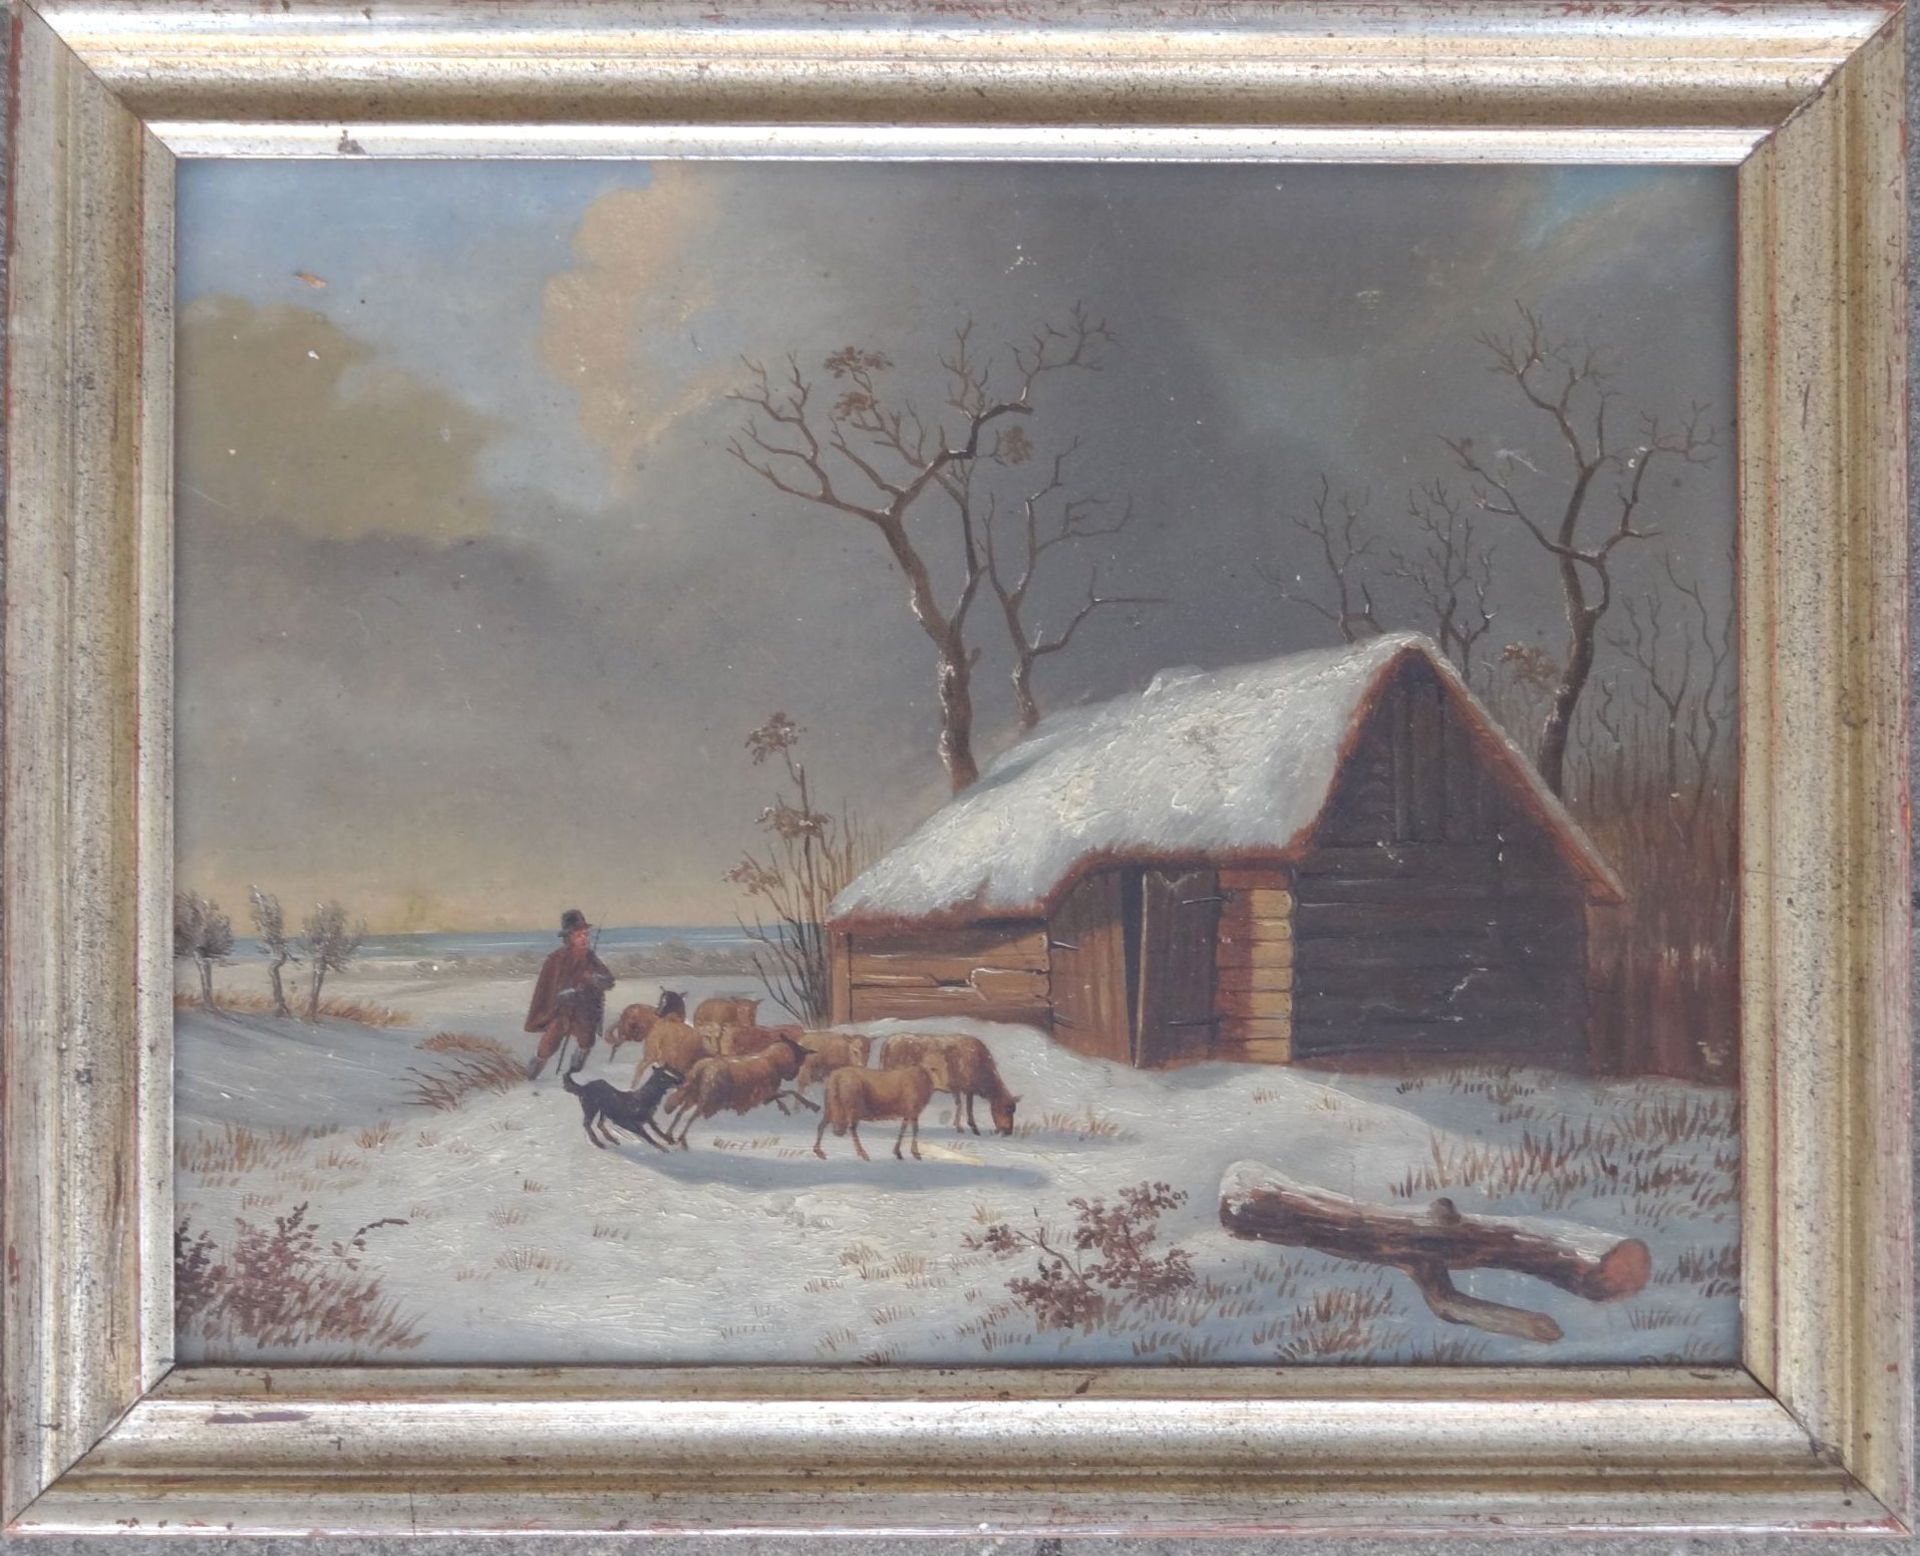 PB, 1849 "Schafherde vor Scheune im Winter", Öl/Holz, 21x27 cm, gerahmt, 27x33 c - Bild 2 aus 5